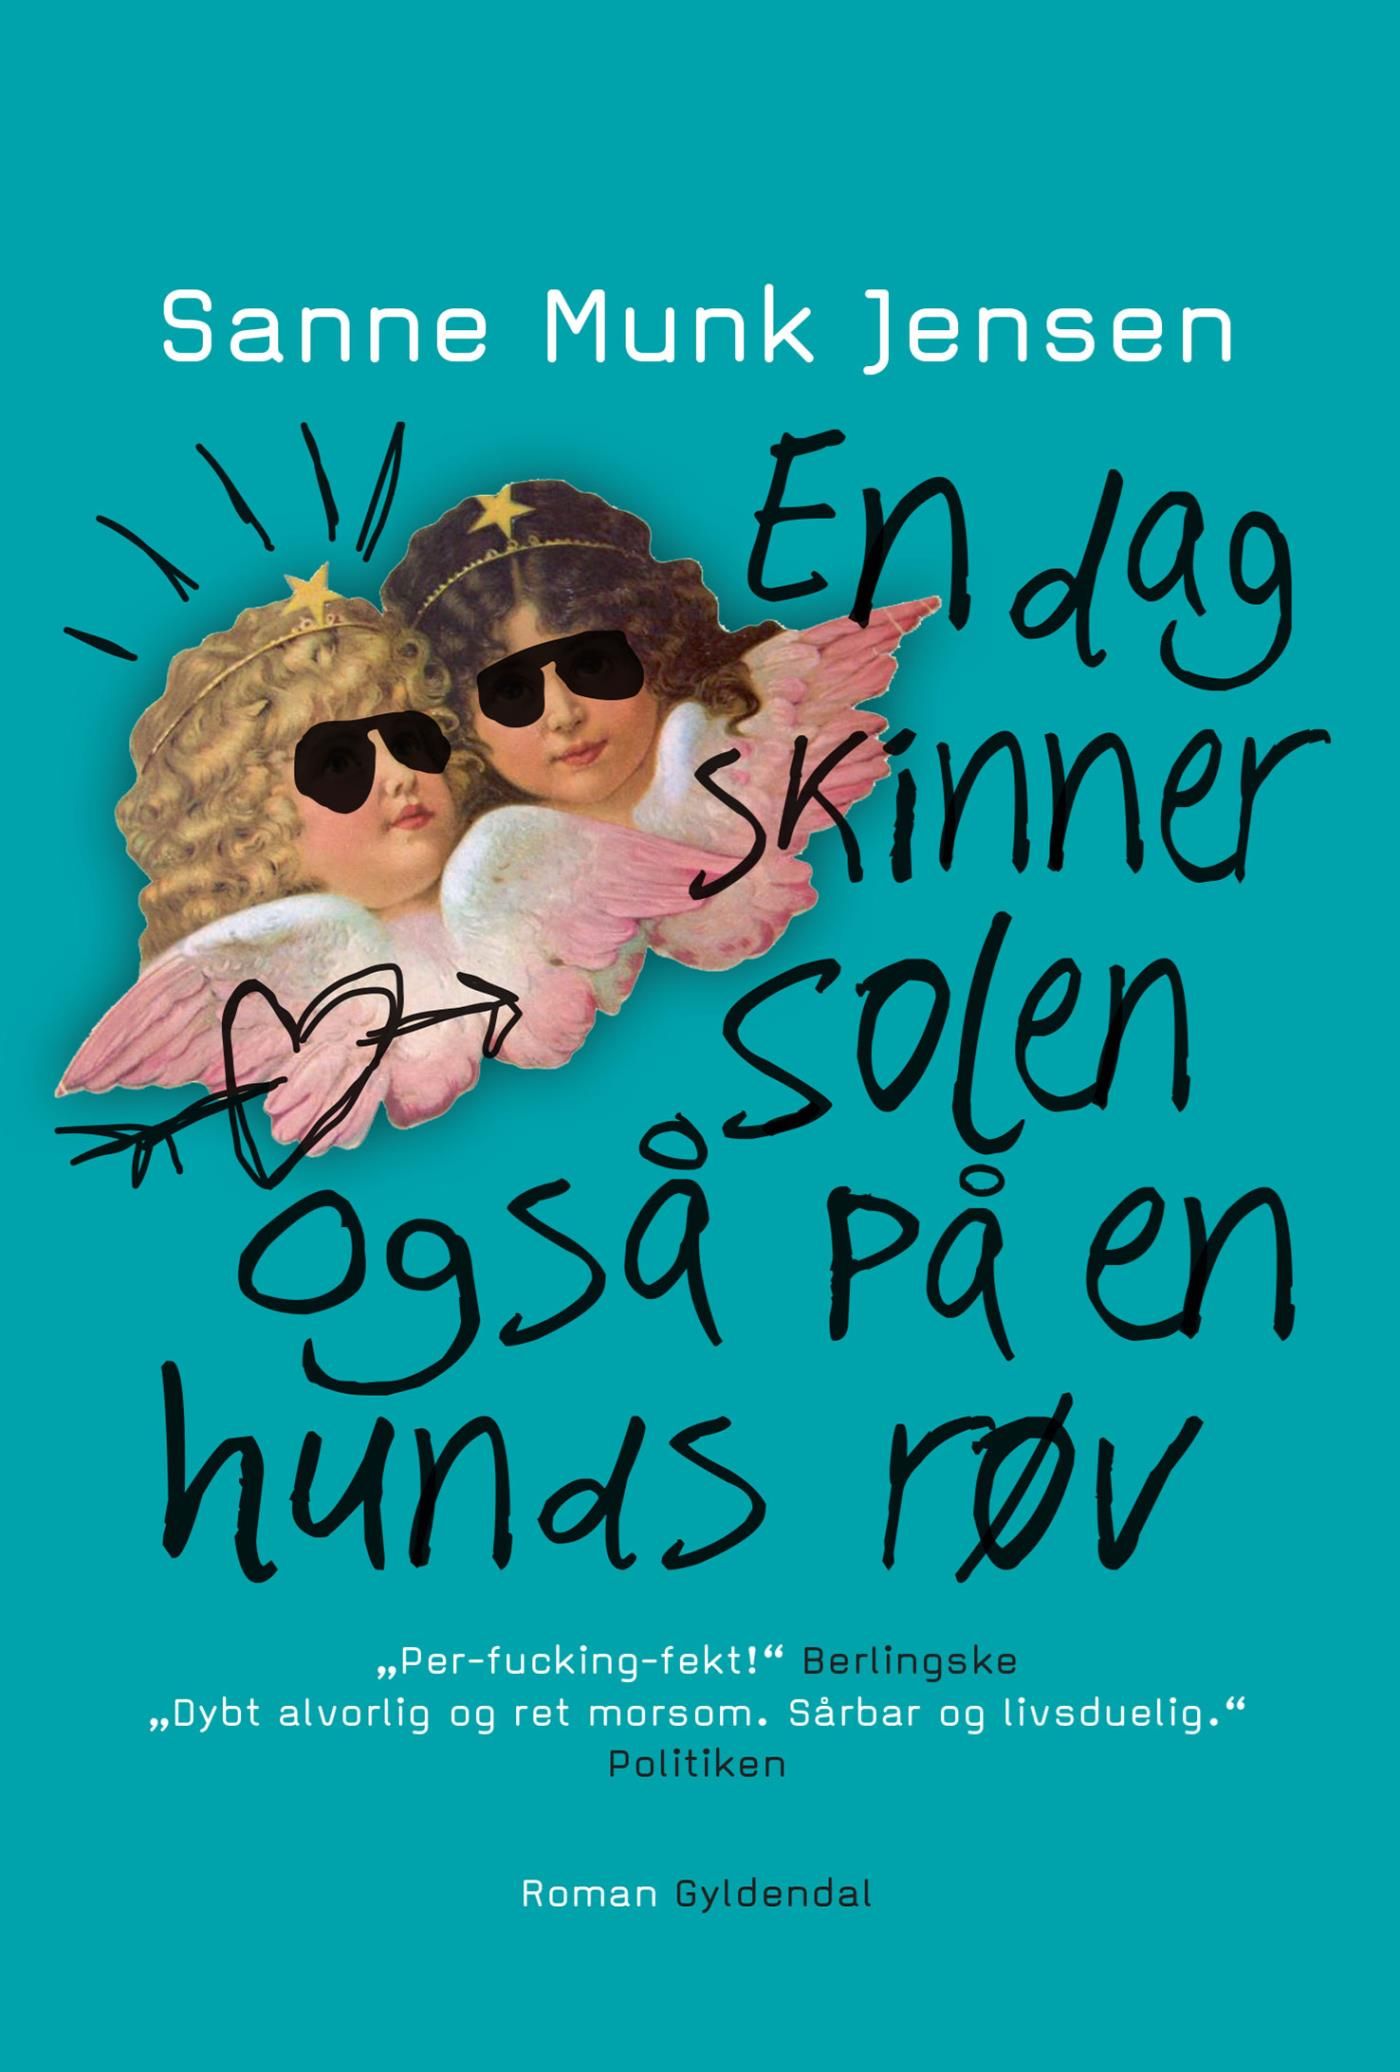 En dag skinner solen også på en hunds røv, e-bok av Sanne Munk Jensen